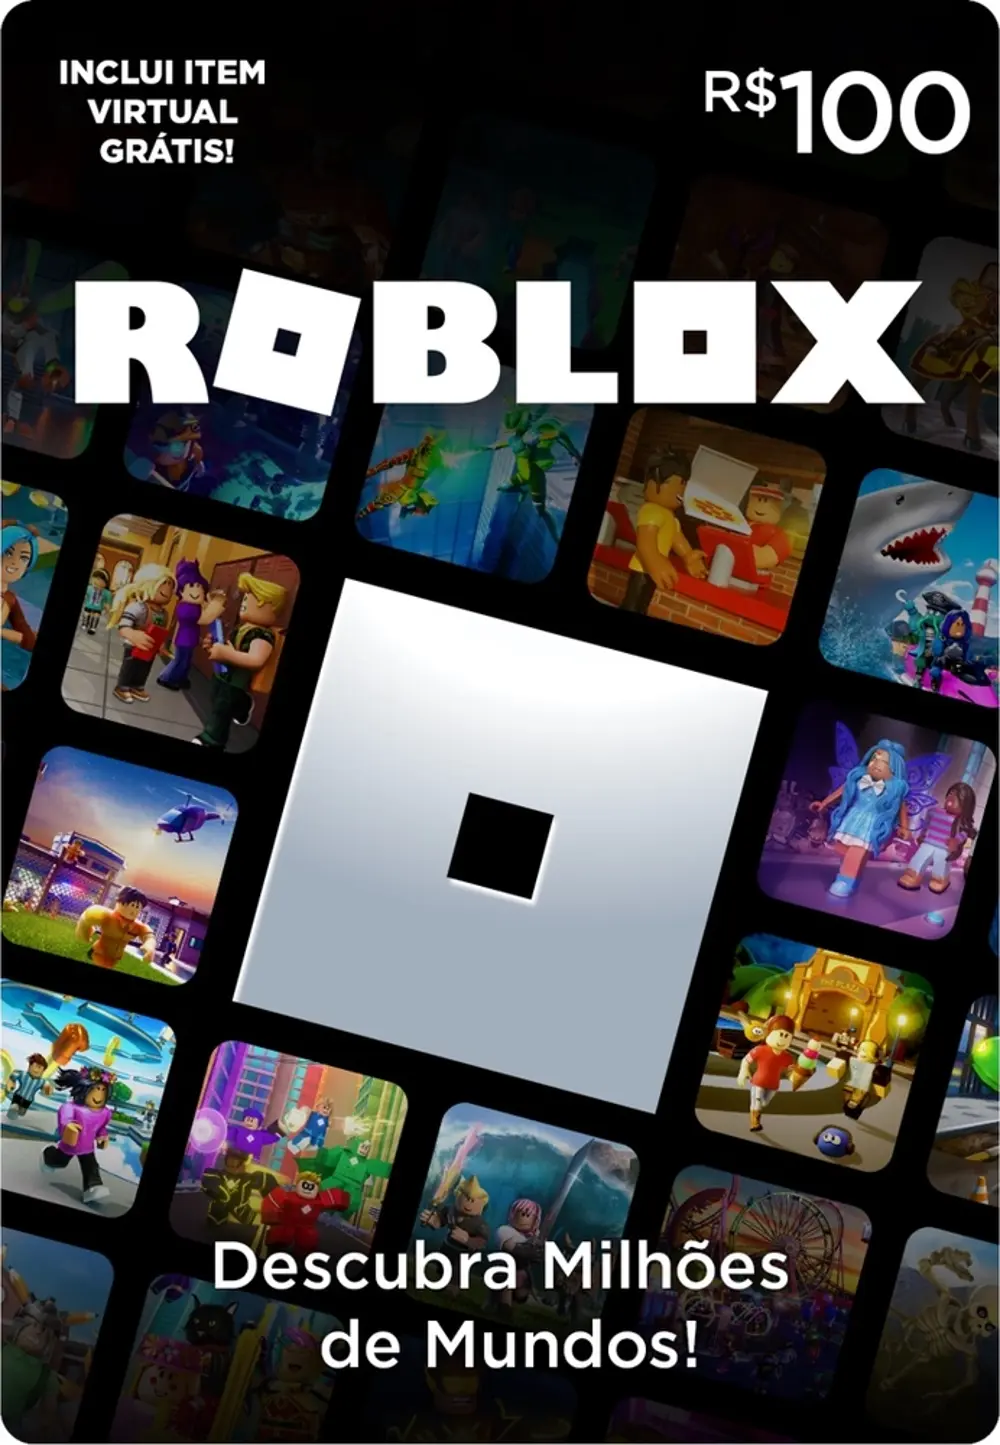 Roblox regista 100 milhões de utilizadores mensais e ultrapassa